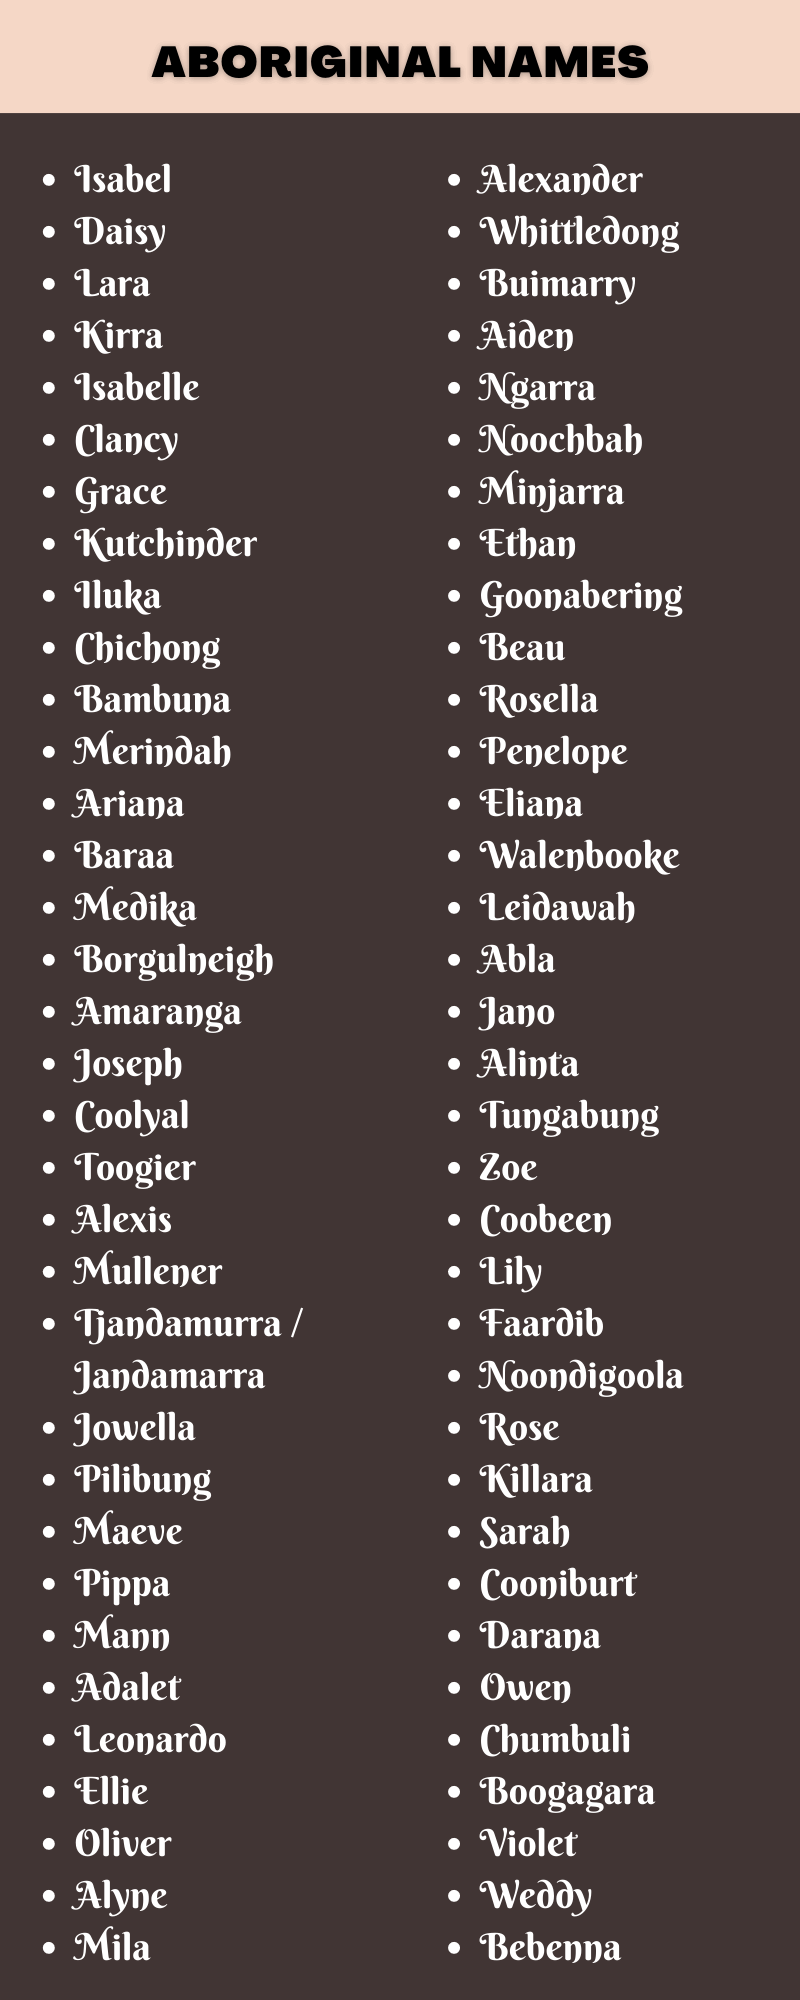 450 Clever Aboriginal Names Ideas